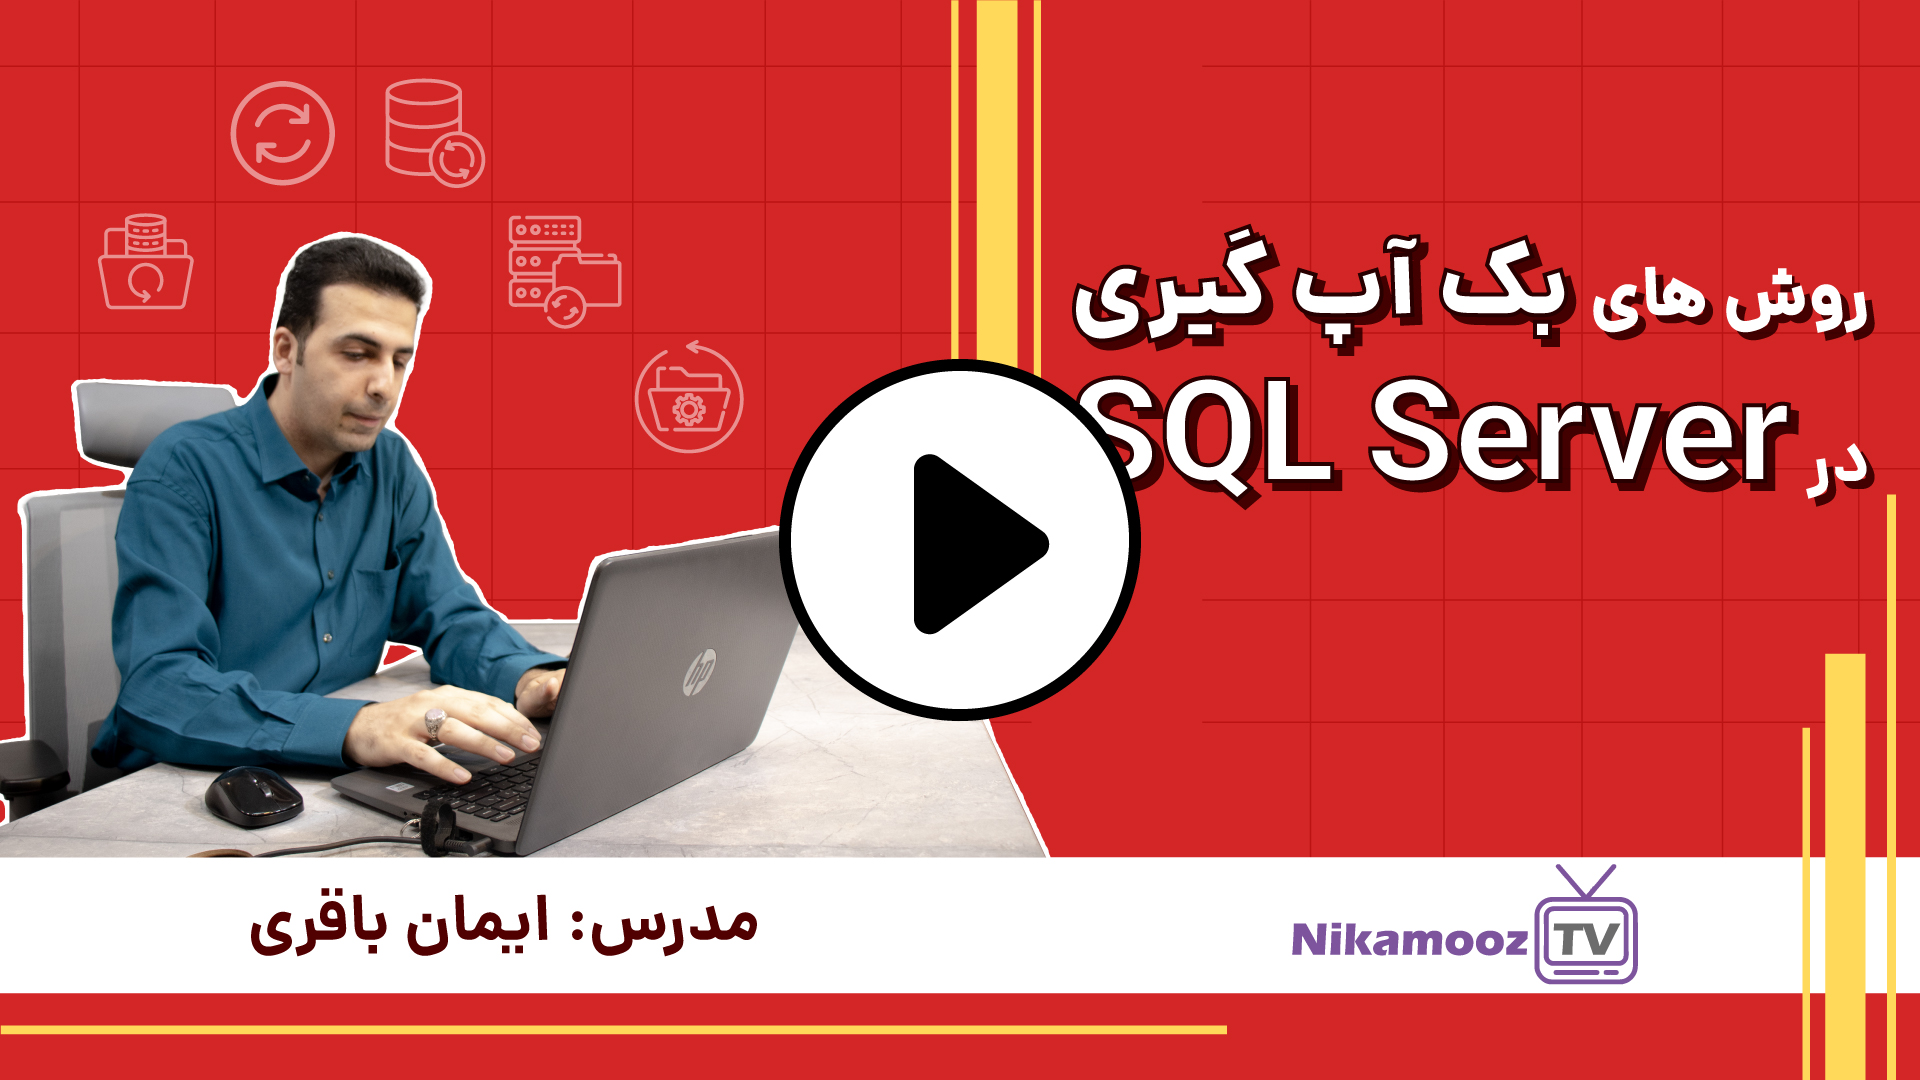 روش های بکاپ گیری در SQL Server